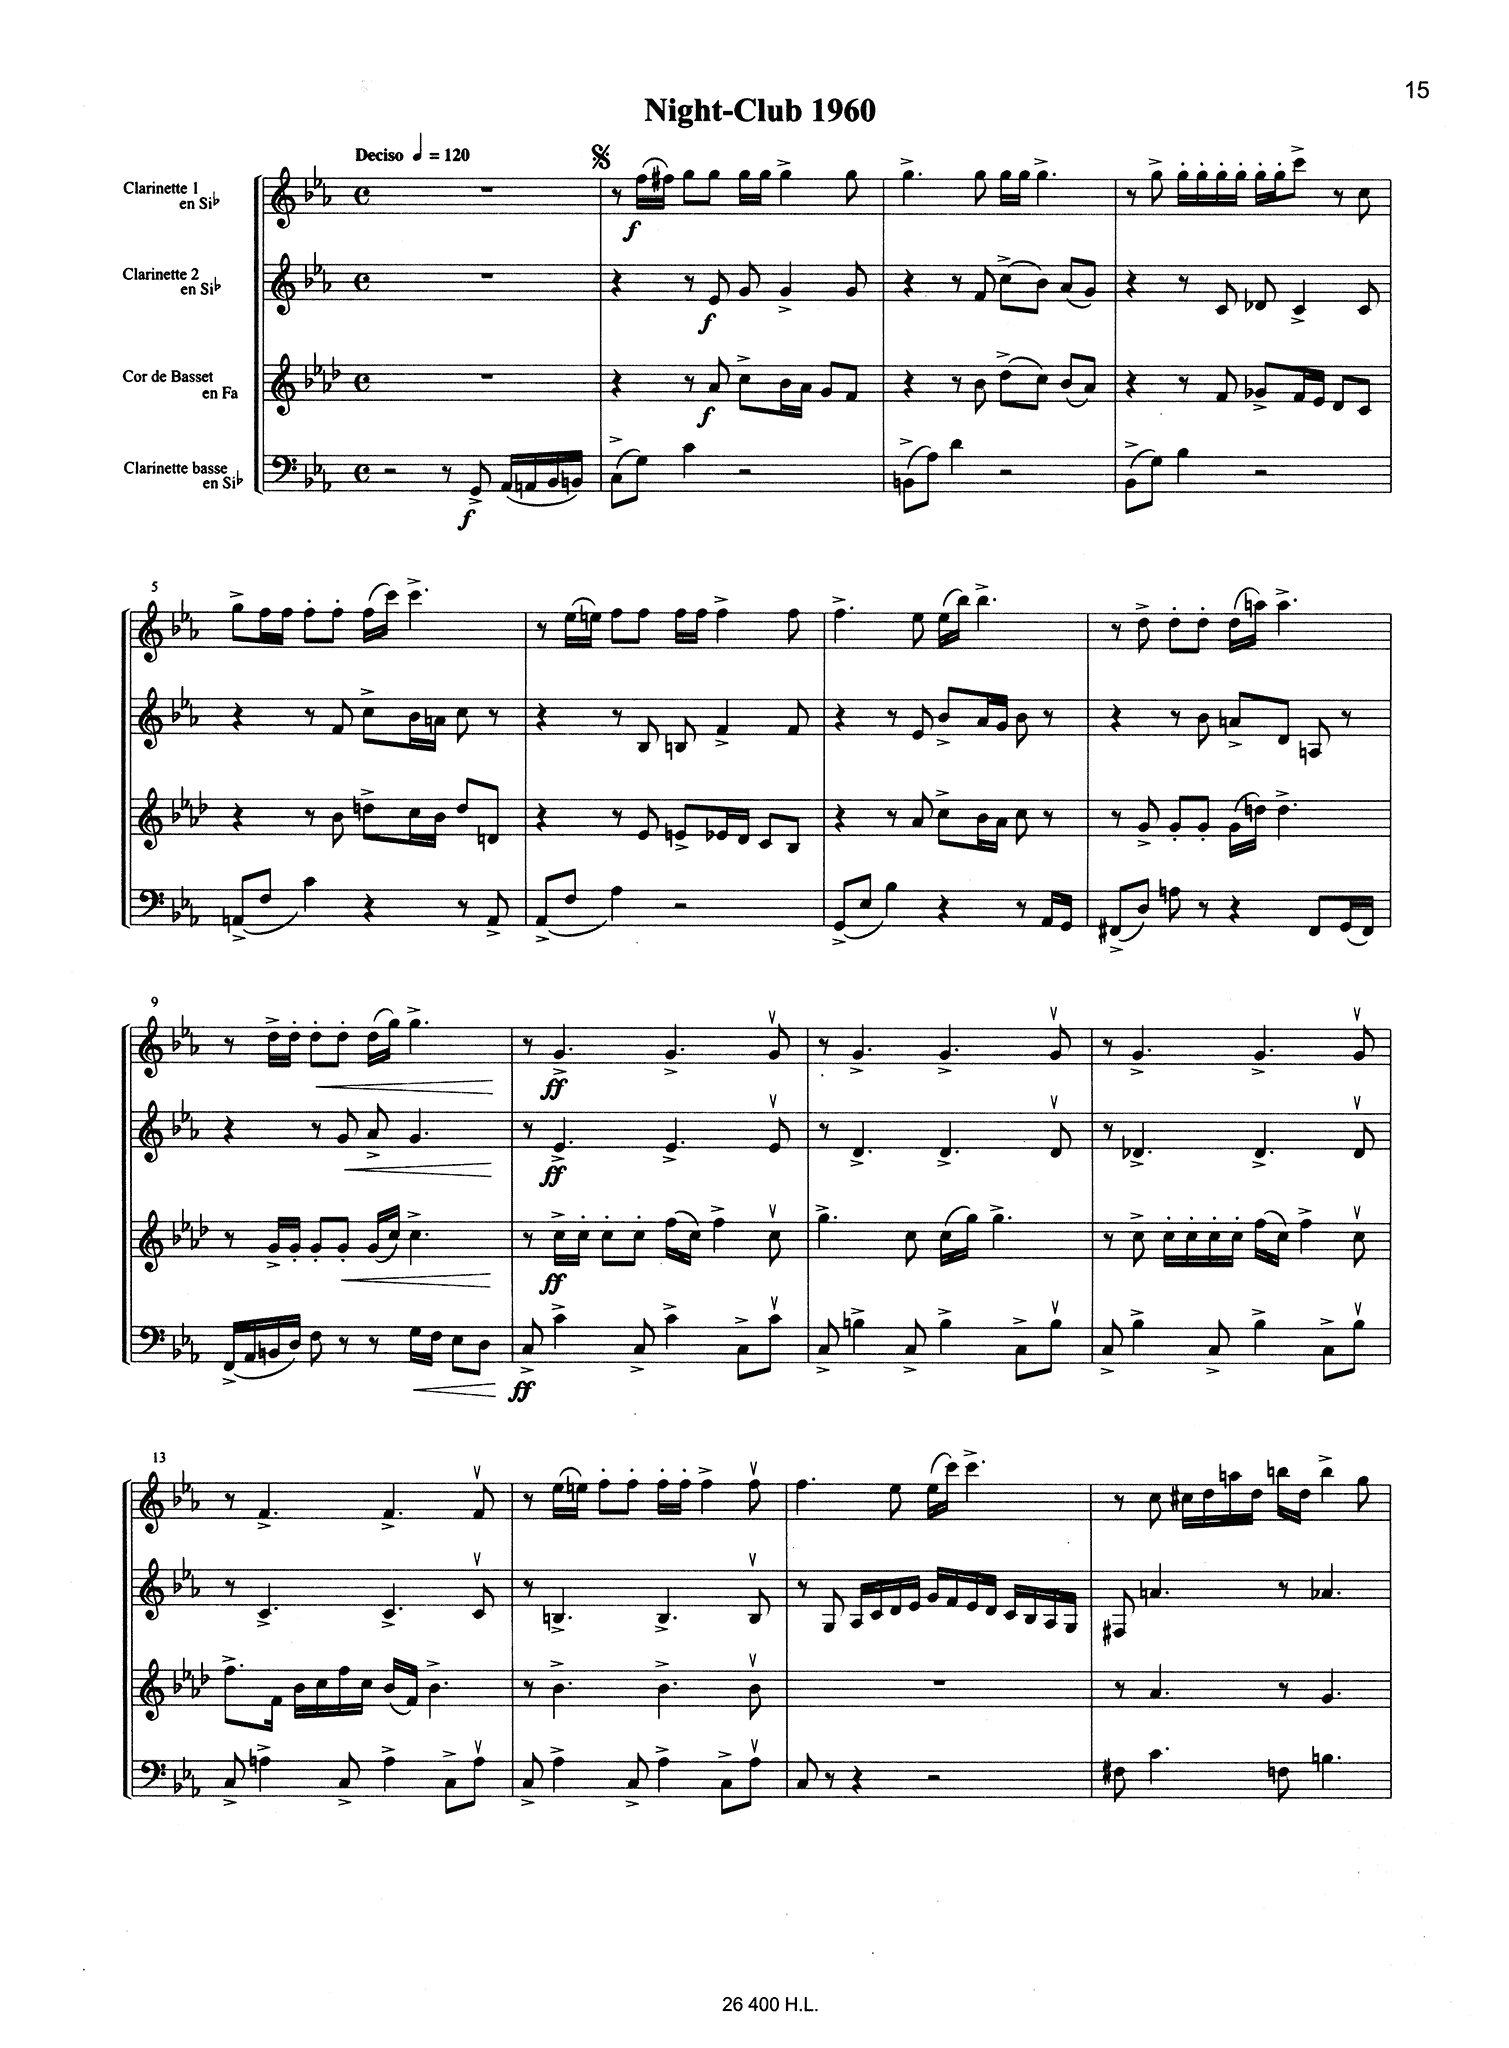 Piazzolla Histoire du Tango clarinet quartet arrangement - Movement 3